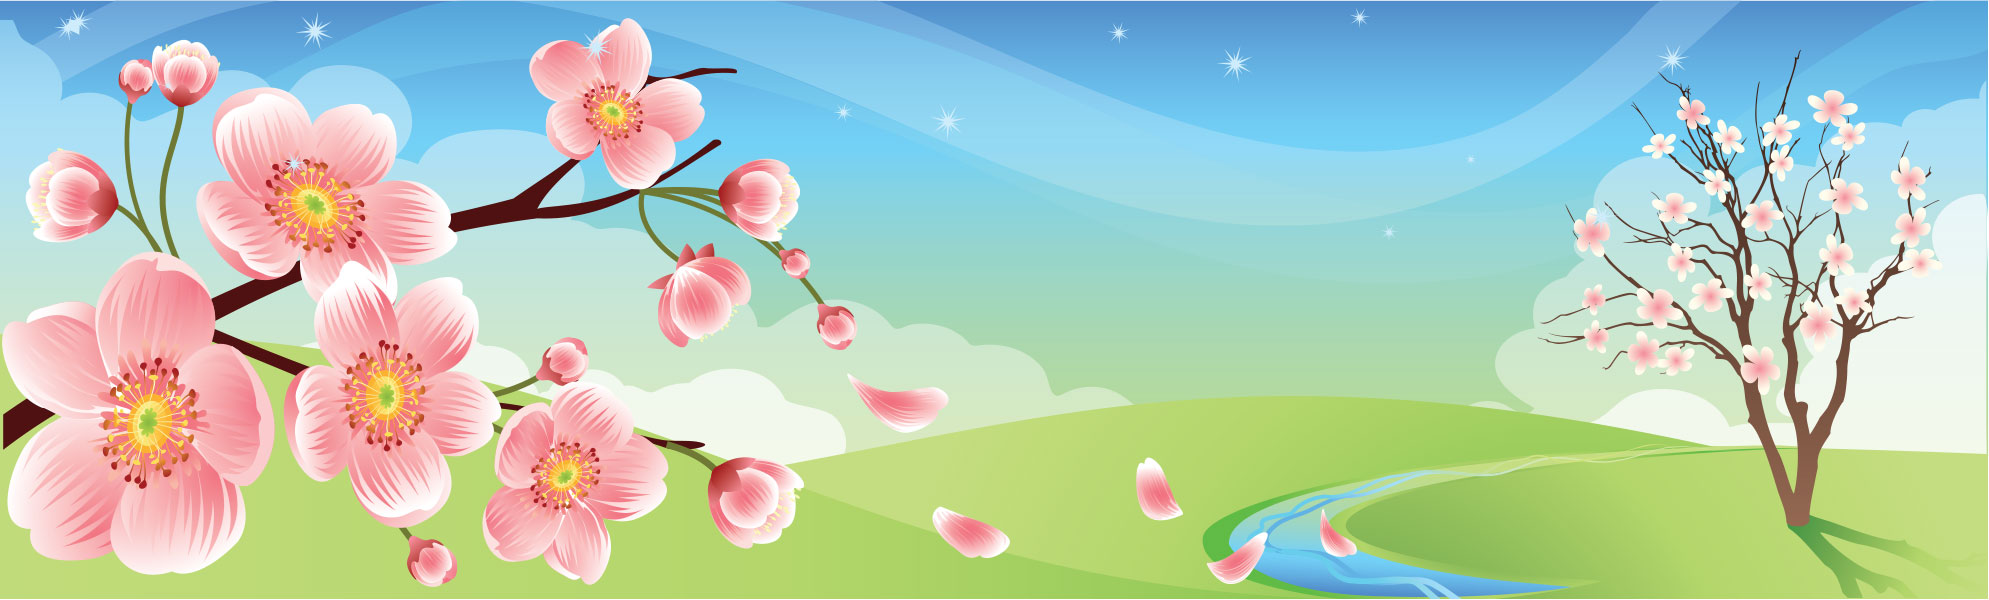 春のイラストno 125 舞い散る桜 無料のフリー素材集 花鳥風月